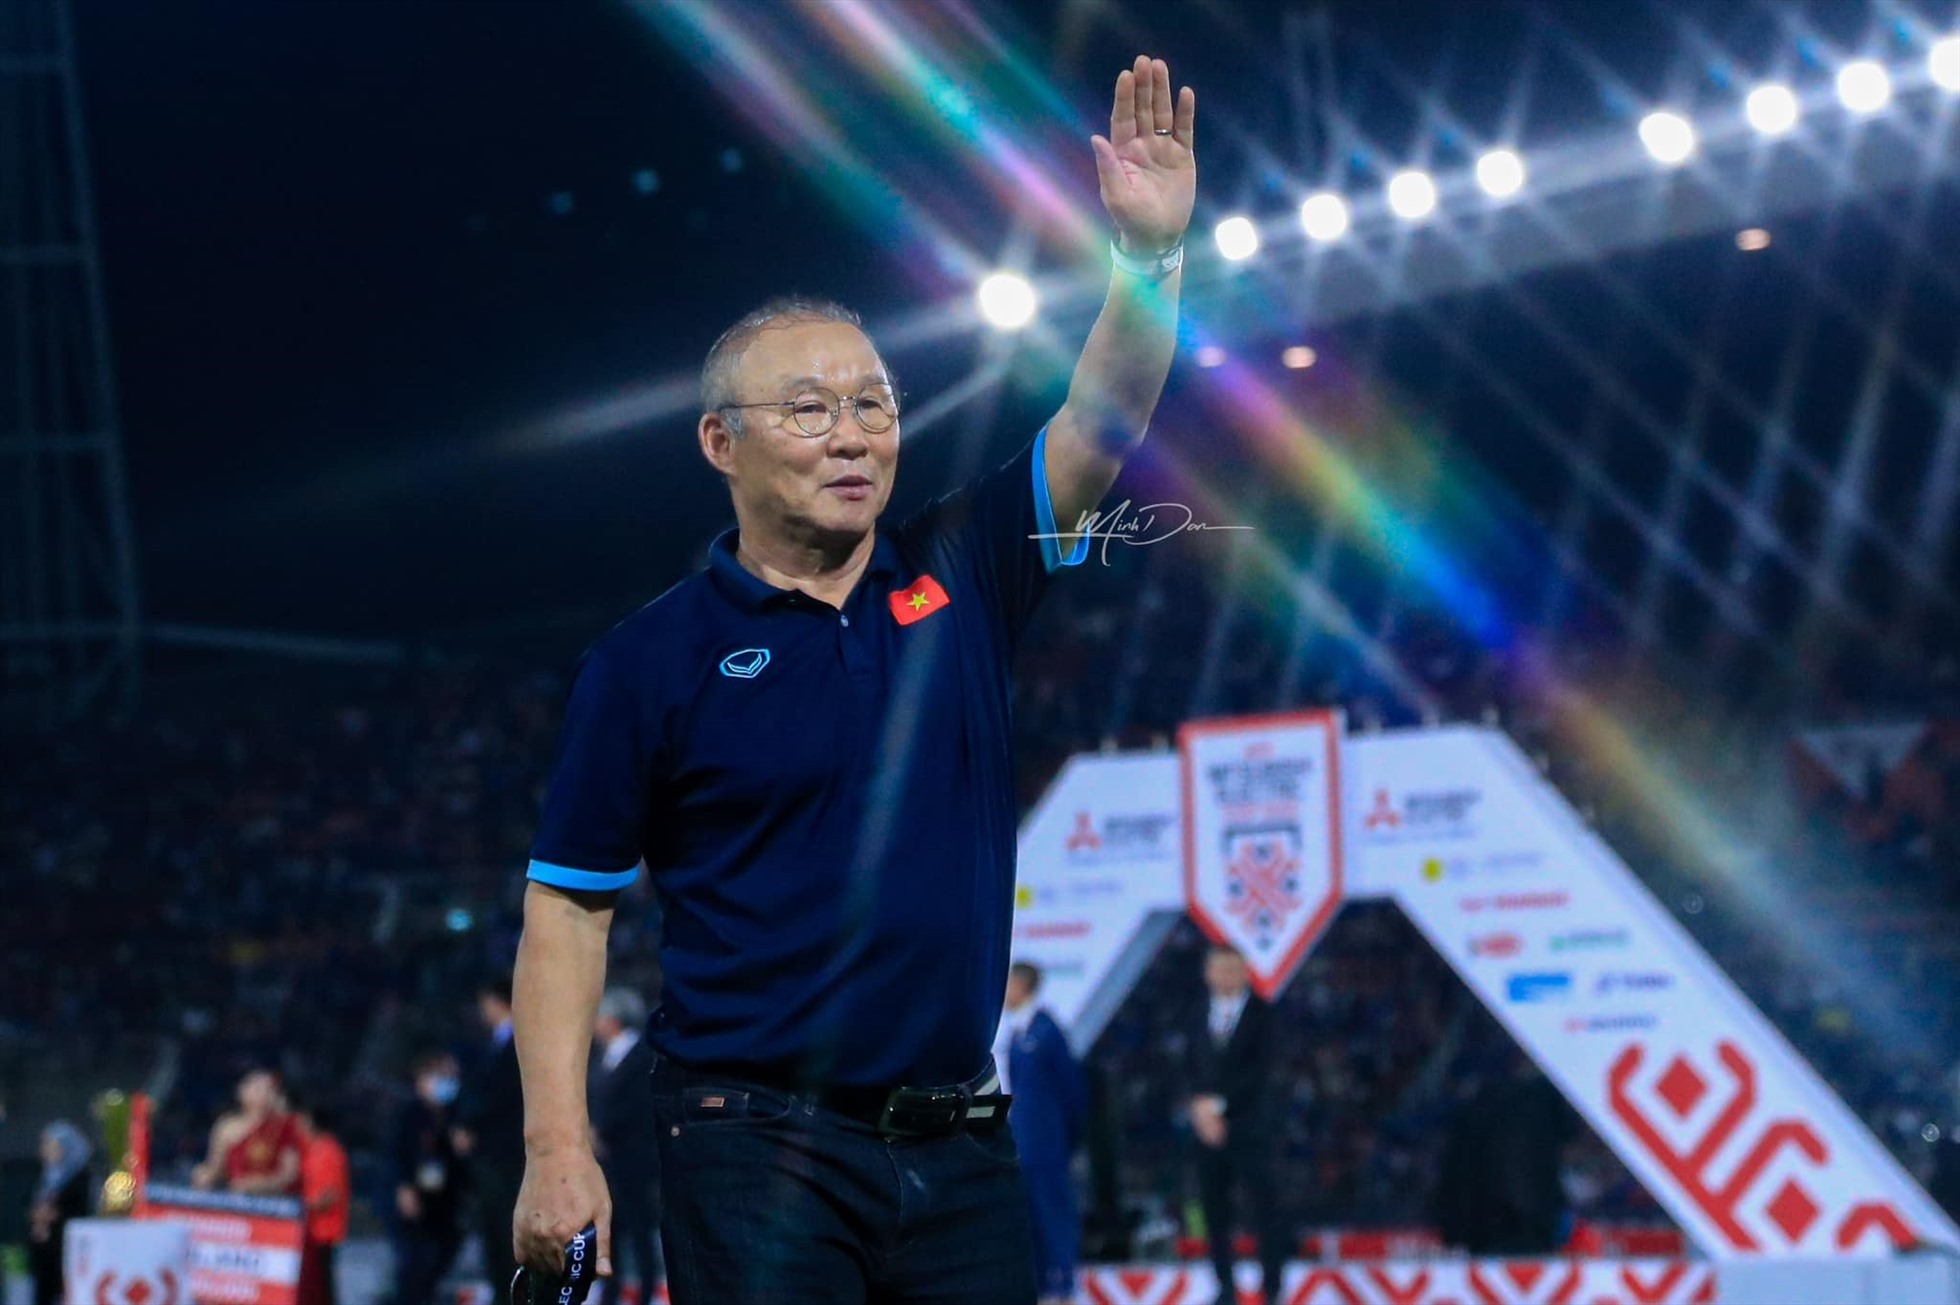 Huấn luyện viên Park Hang-seo là một trong những huấn luyện viên thành công bậc nhất trong lịch sử bóng đá Việt Nam. Ảnh: Minh Dân